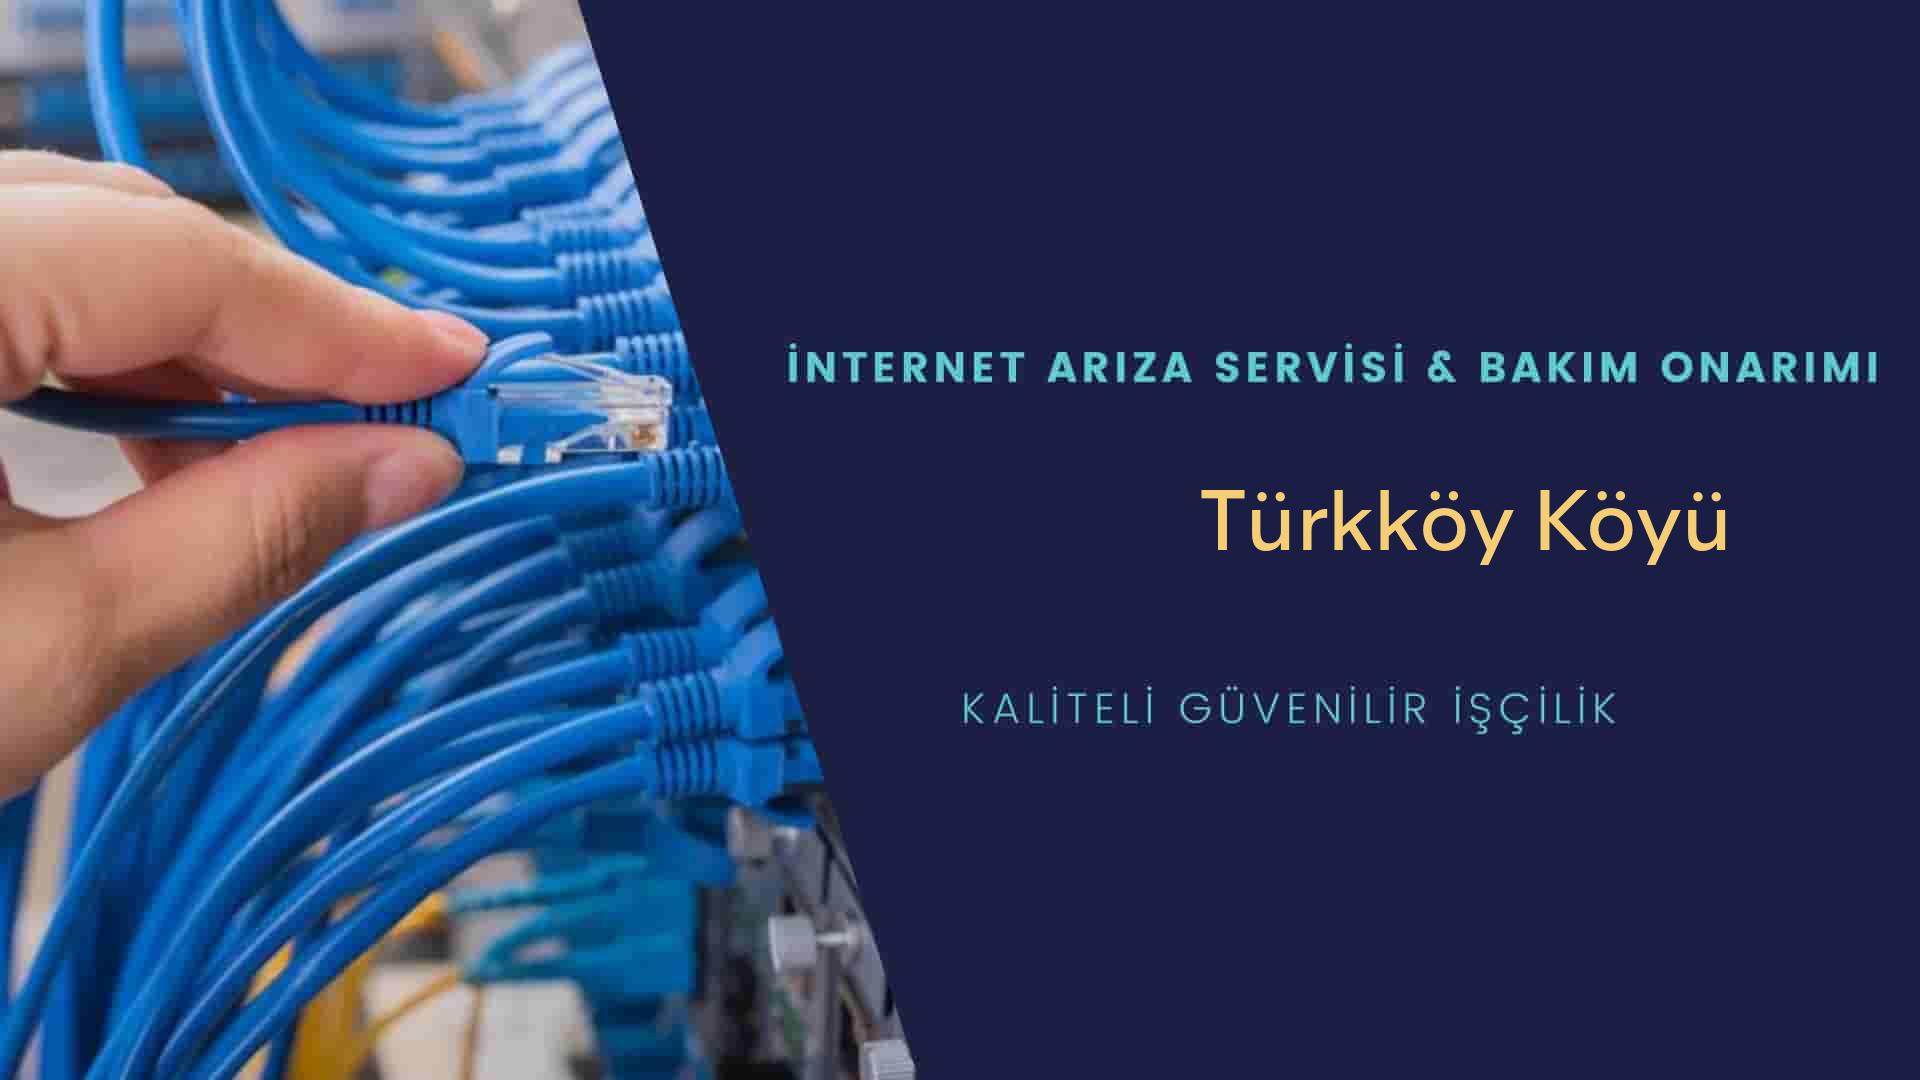 Türkköy Köyü internet kablosu çekimi yapan yerler veya elektrikçiler mi? arıyorsunuz doğru yerdesiniz o zaman sizlere 7/24 yardımcı olacak profesyonel ustalarımız bir telefon kadar yakındır size.